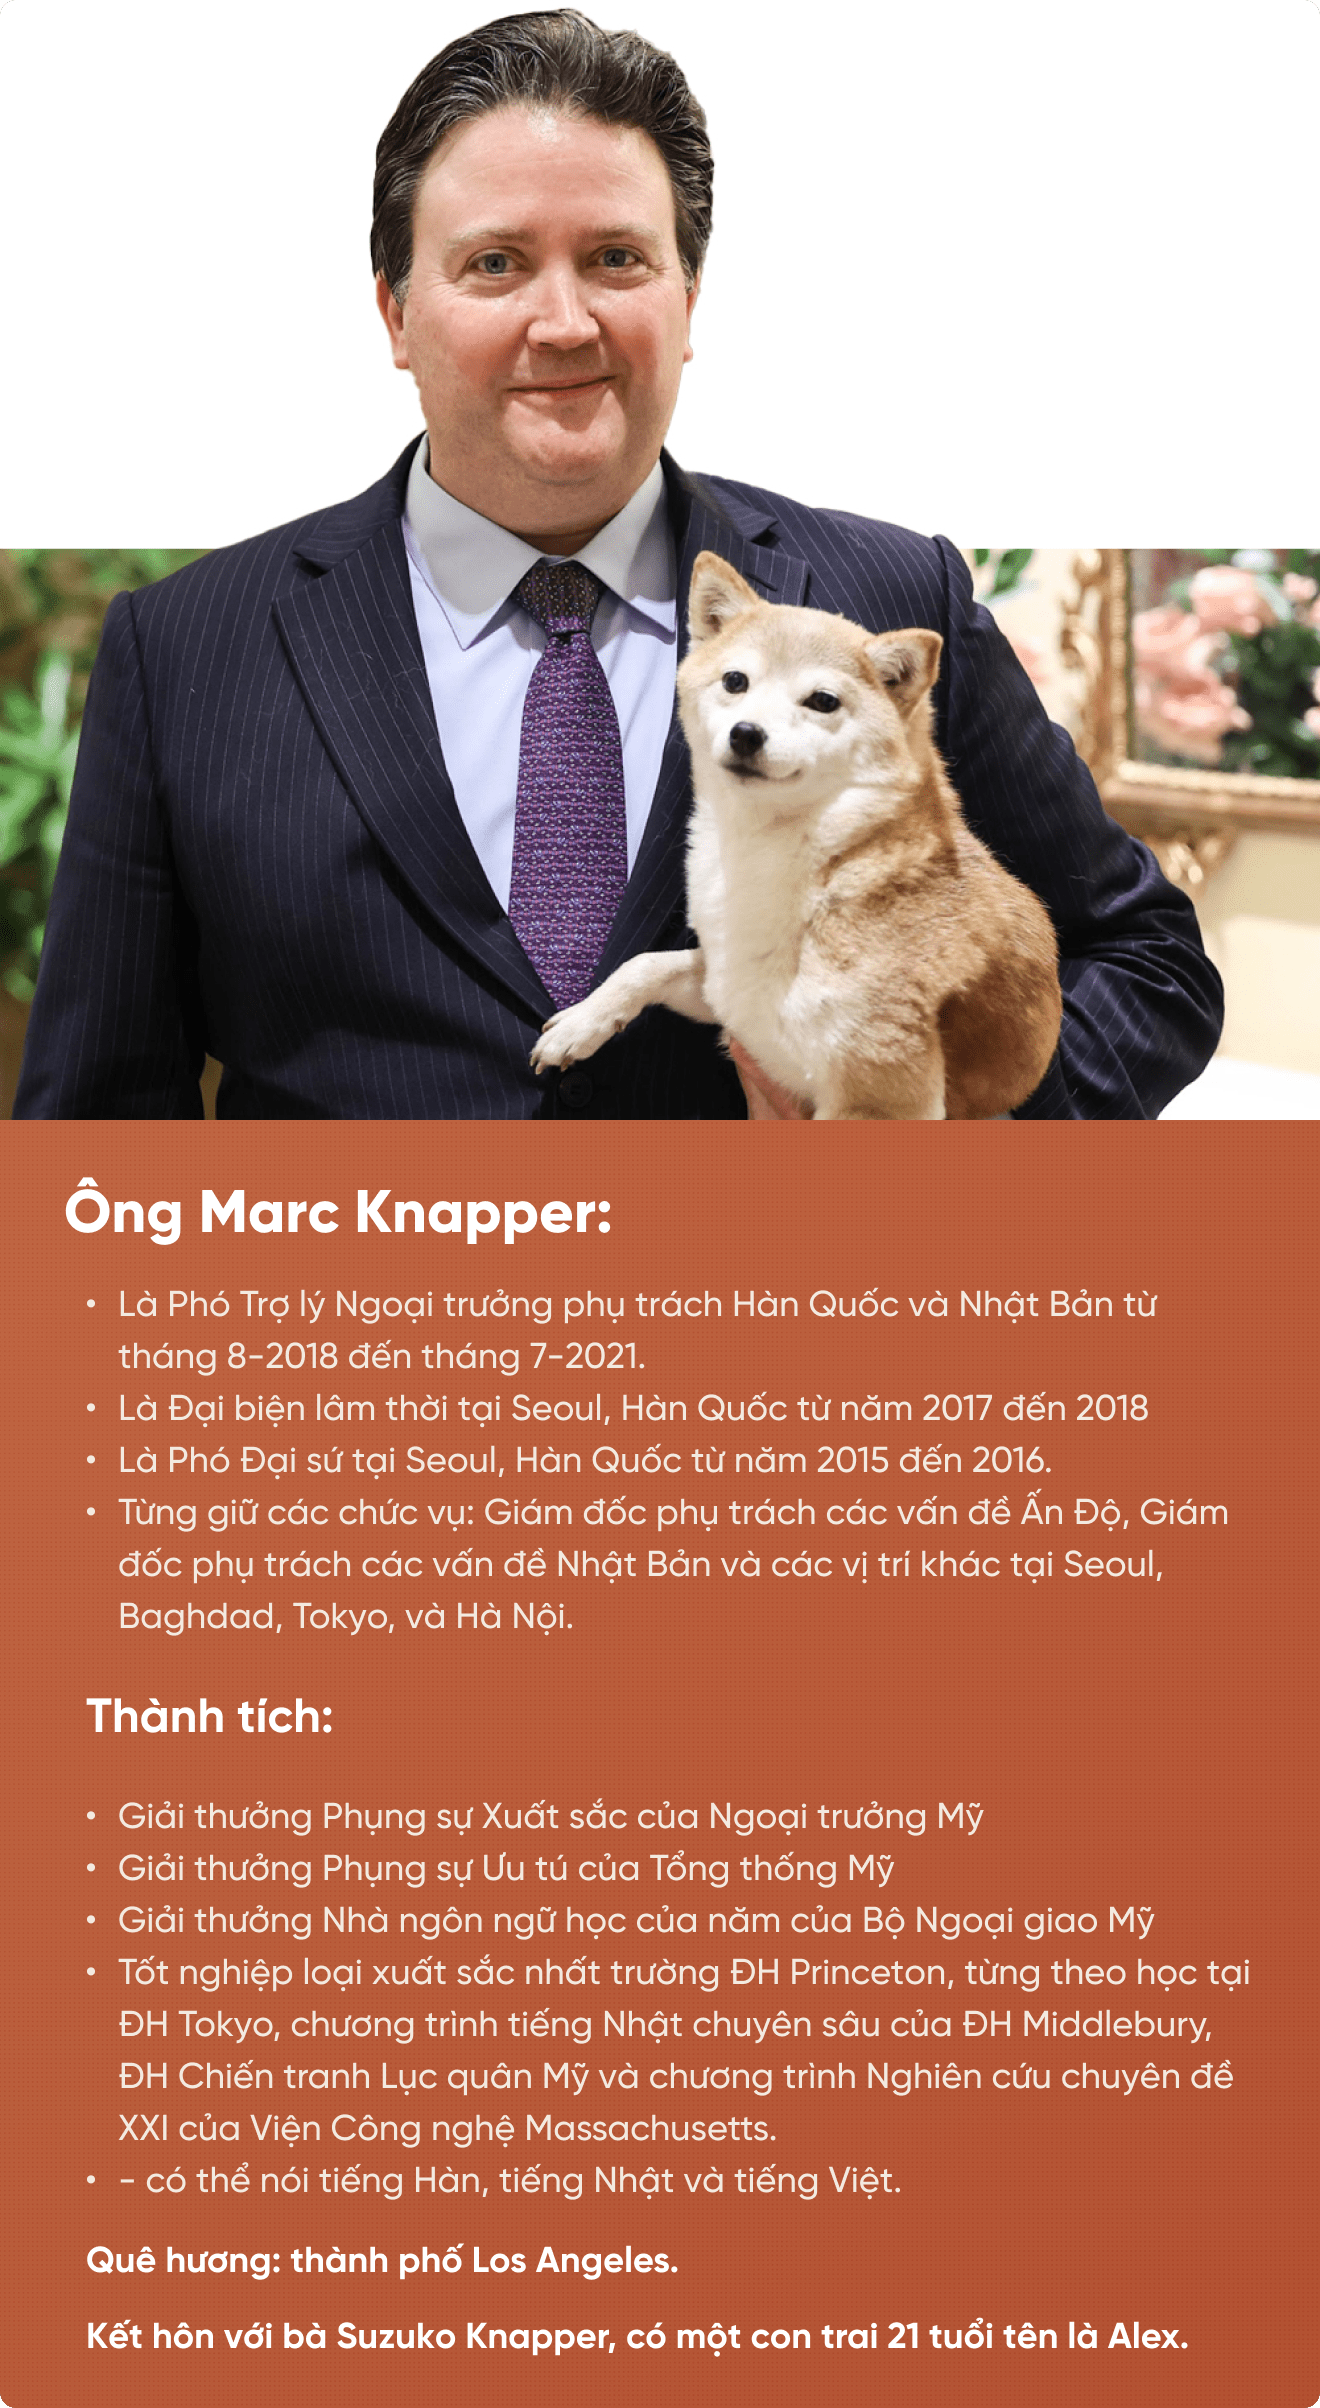 25 min 1 - Đại sứ Marc Knapper: 'Việt Nam luôn chiếm vị trí độc nhất trong trái tim tôi'